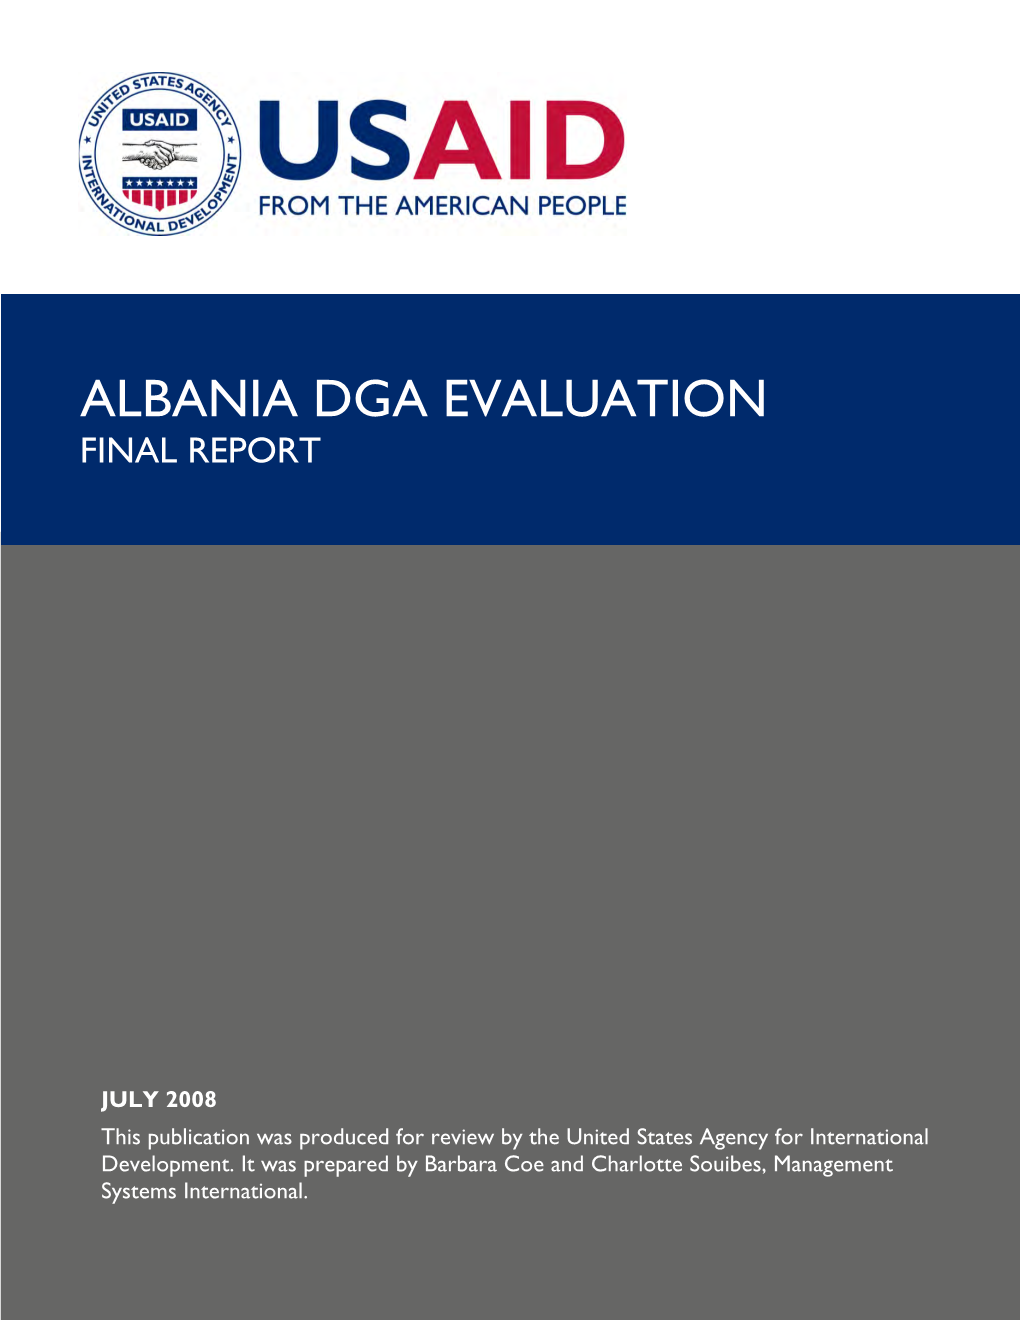 Albania Dga Evaluation Final Report